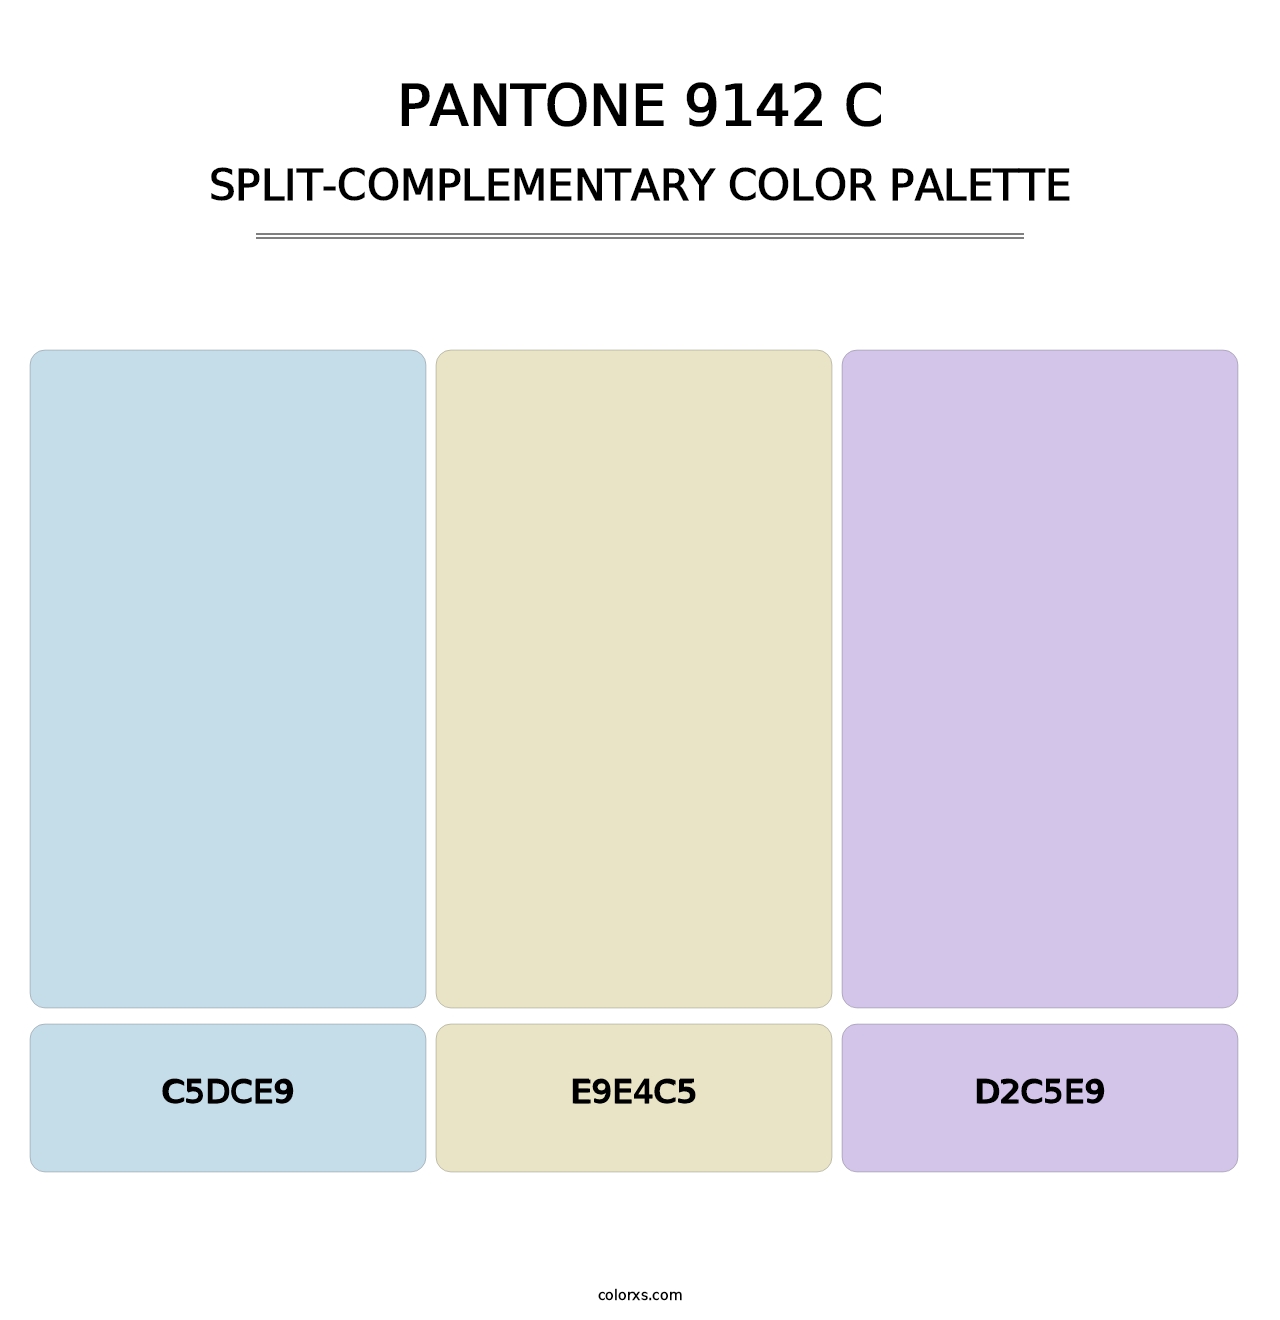 PANTONE 9142 C - Split-Complementary Color Palette